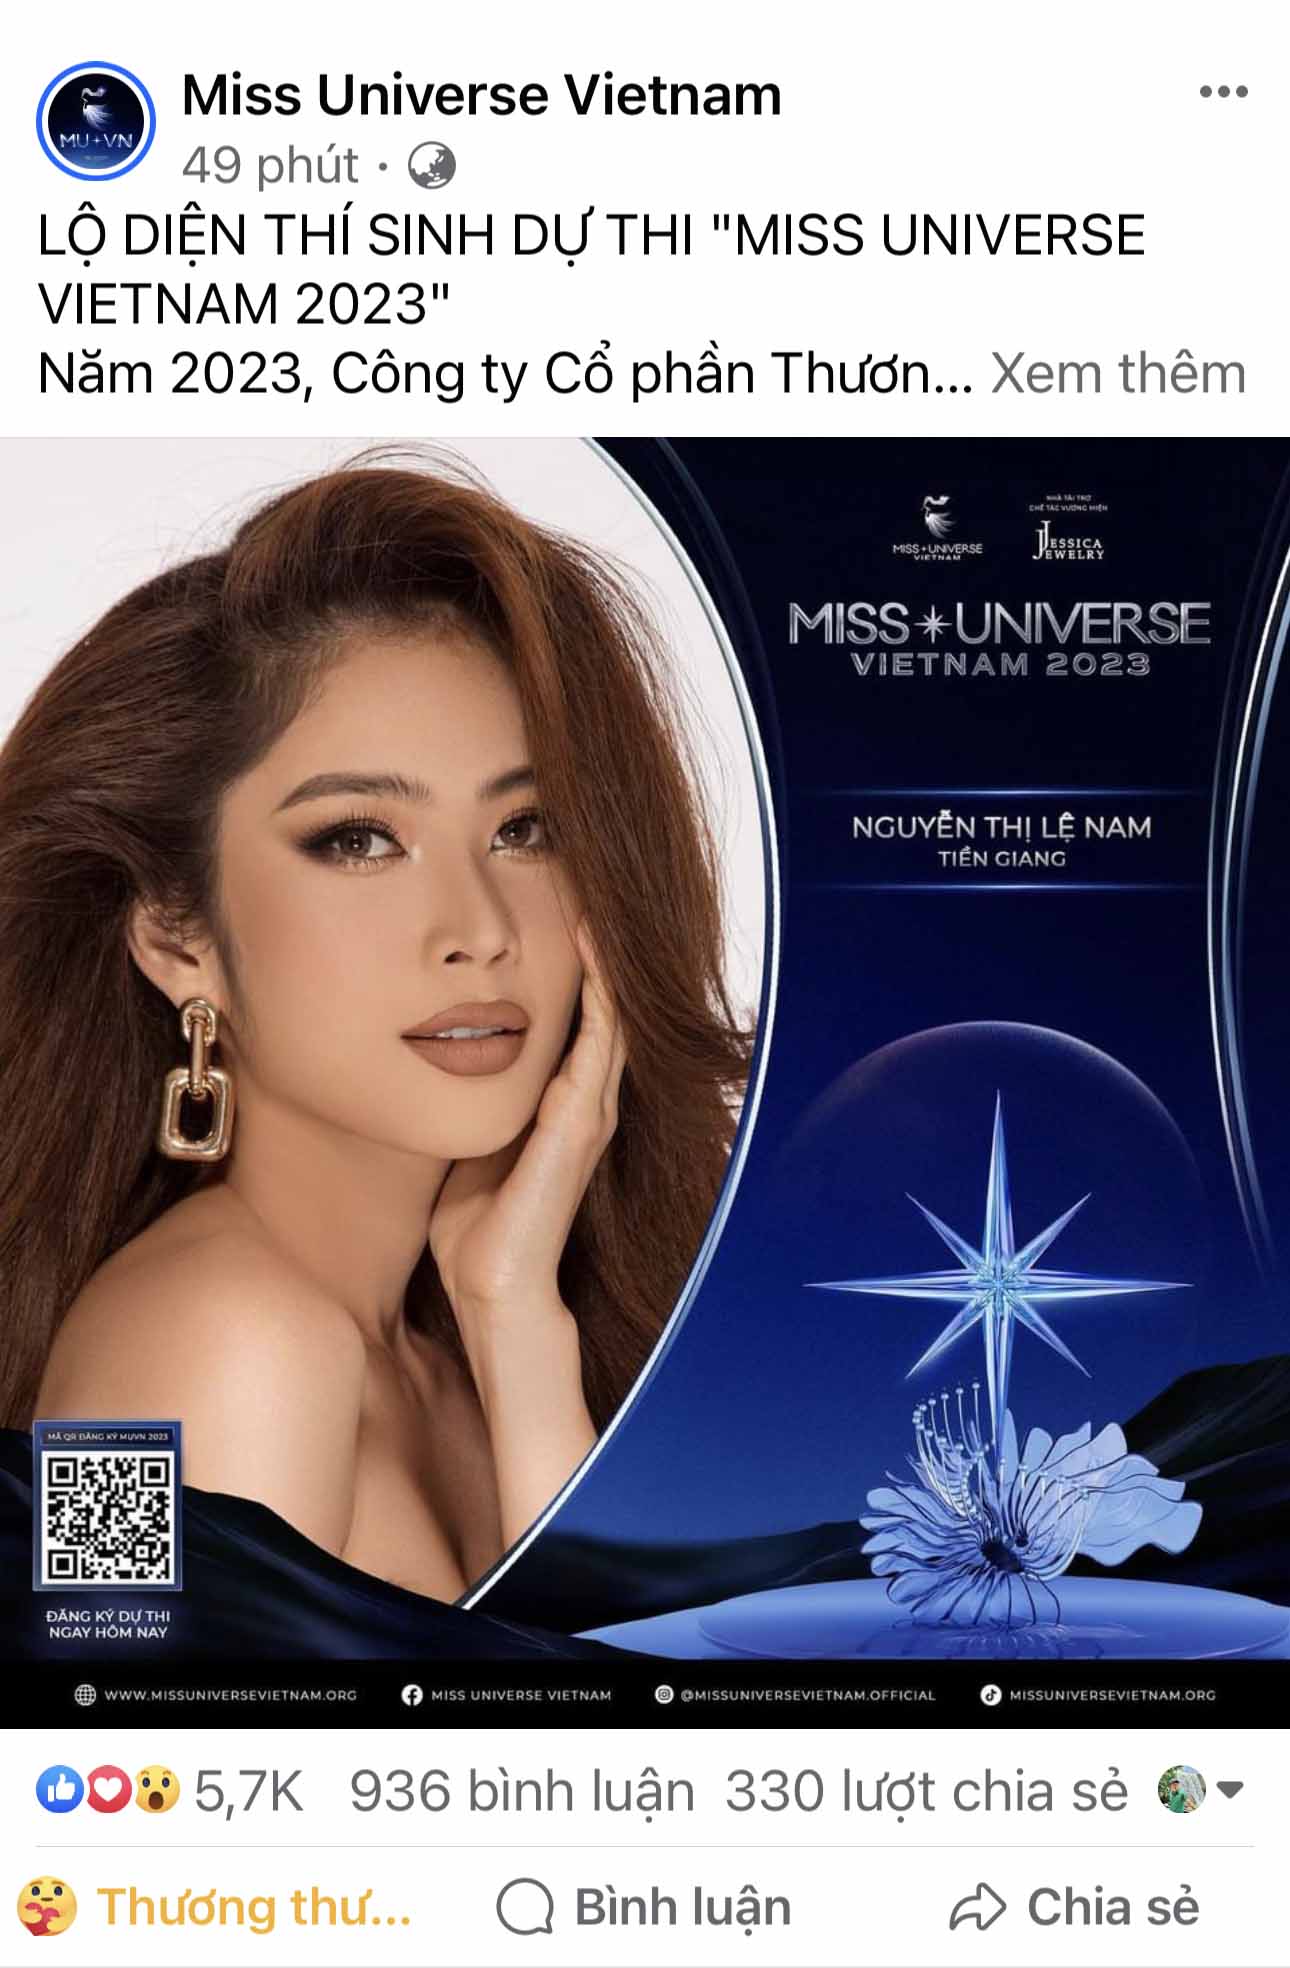 Hiện Lệ Nam đang là người mẫu, diễn viên và doanh nhân. Tin tức cô xác nhận tham gia Miss Universe Vietnam 2023 nhanh chóng được công chúng đón nhận nồng nhiệt.